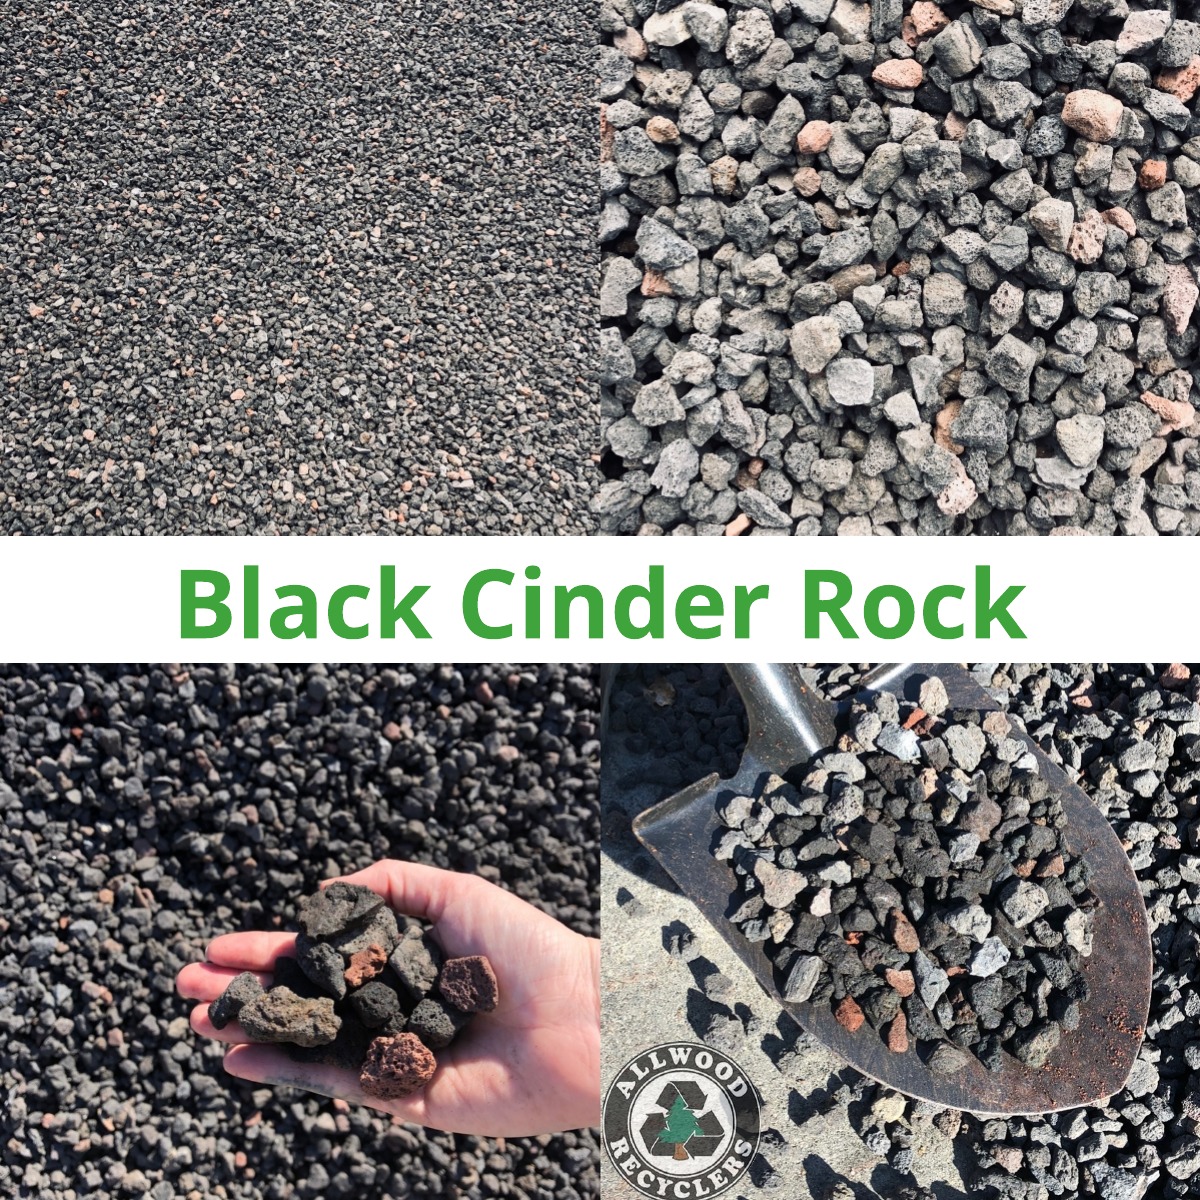 Black Cinder Rock